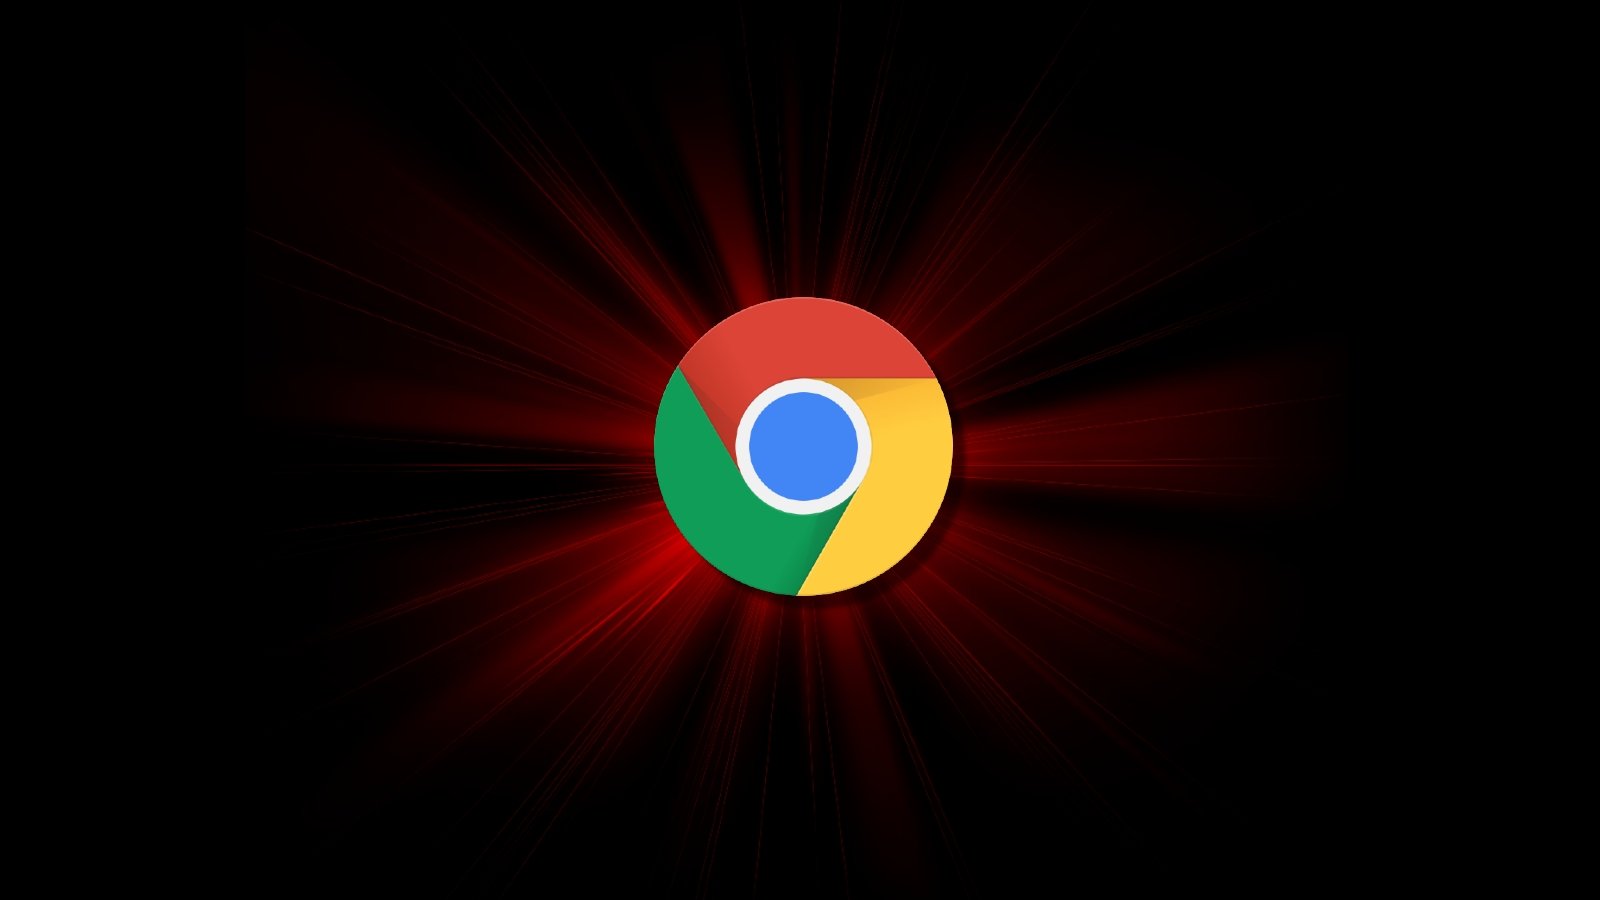 Logotipo de Google Chrome en un estallido rojo